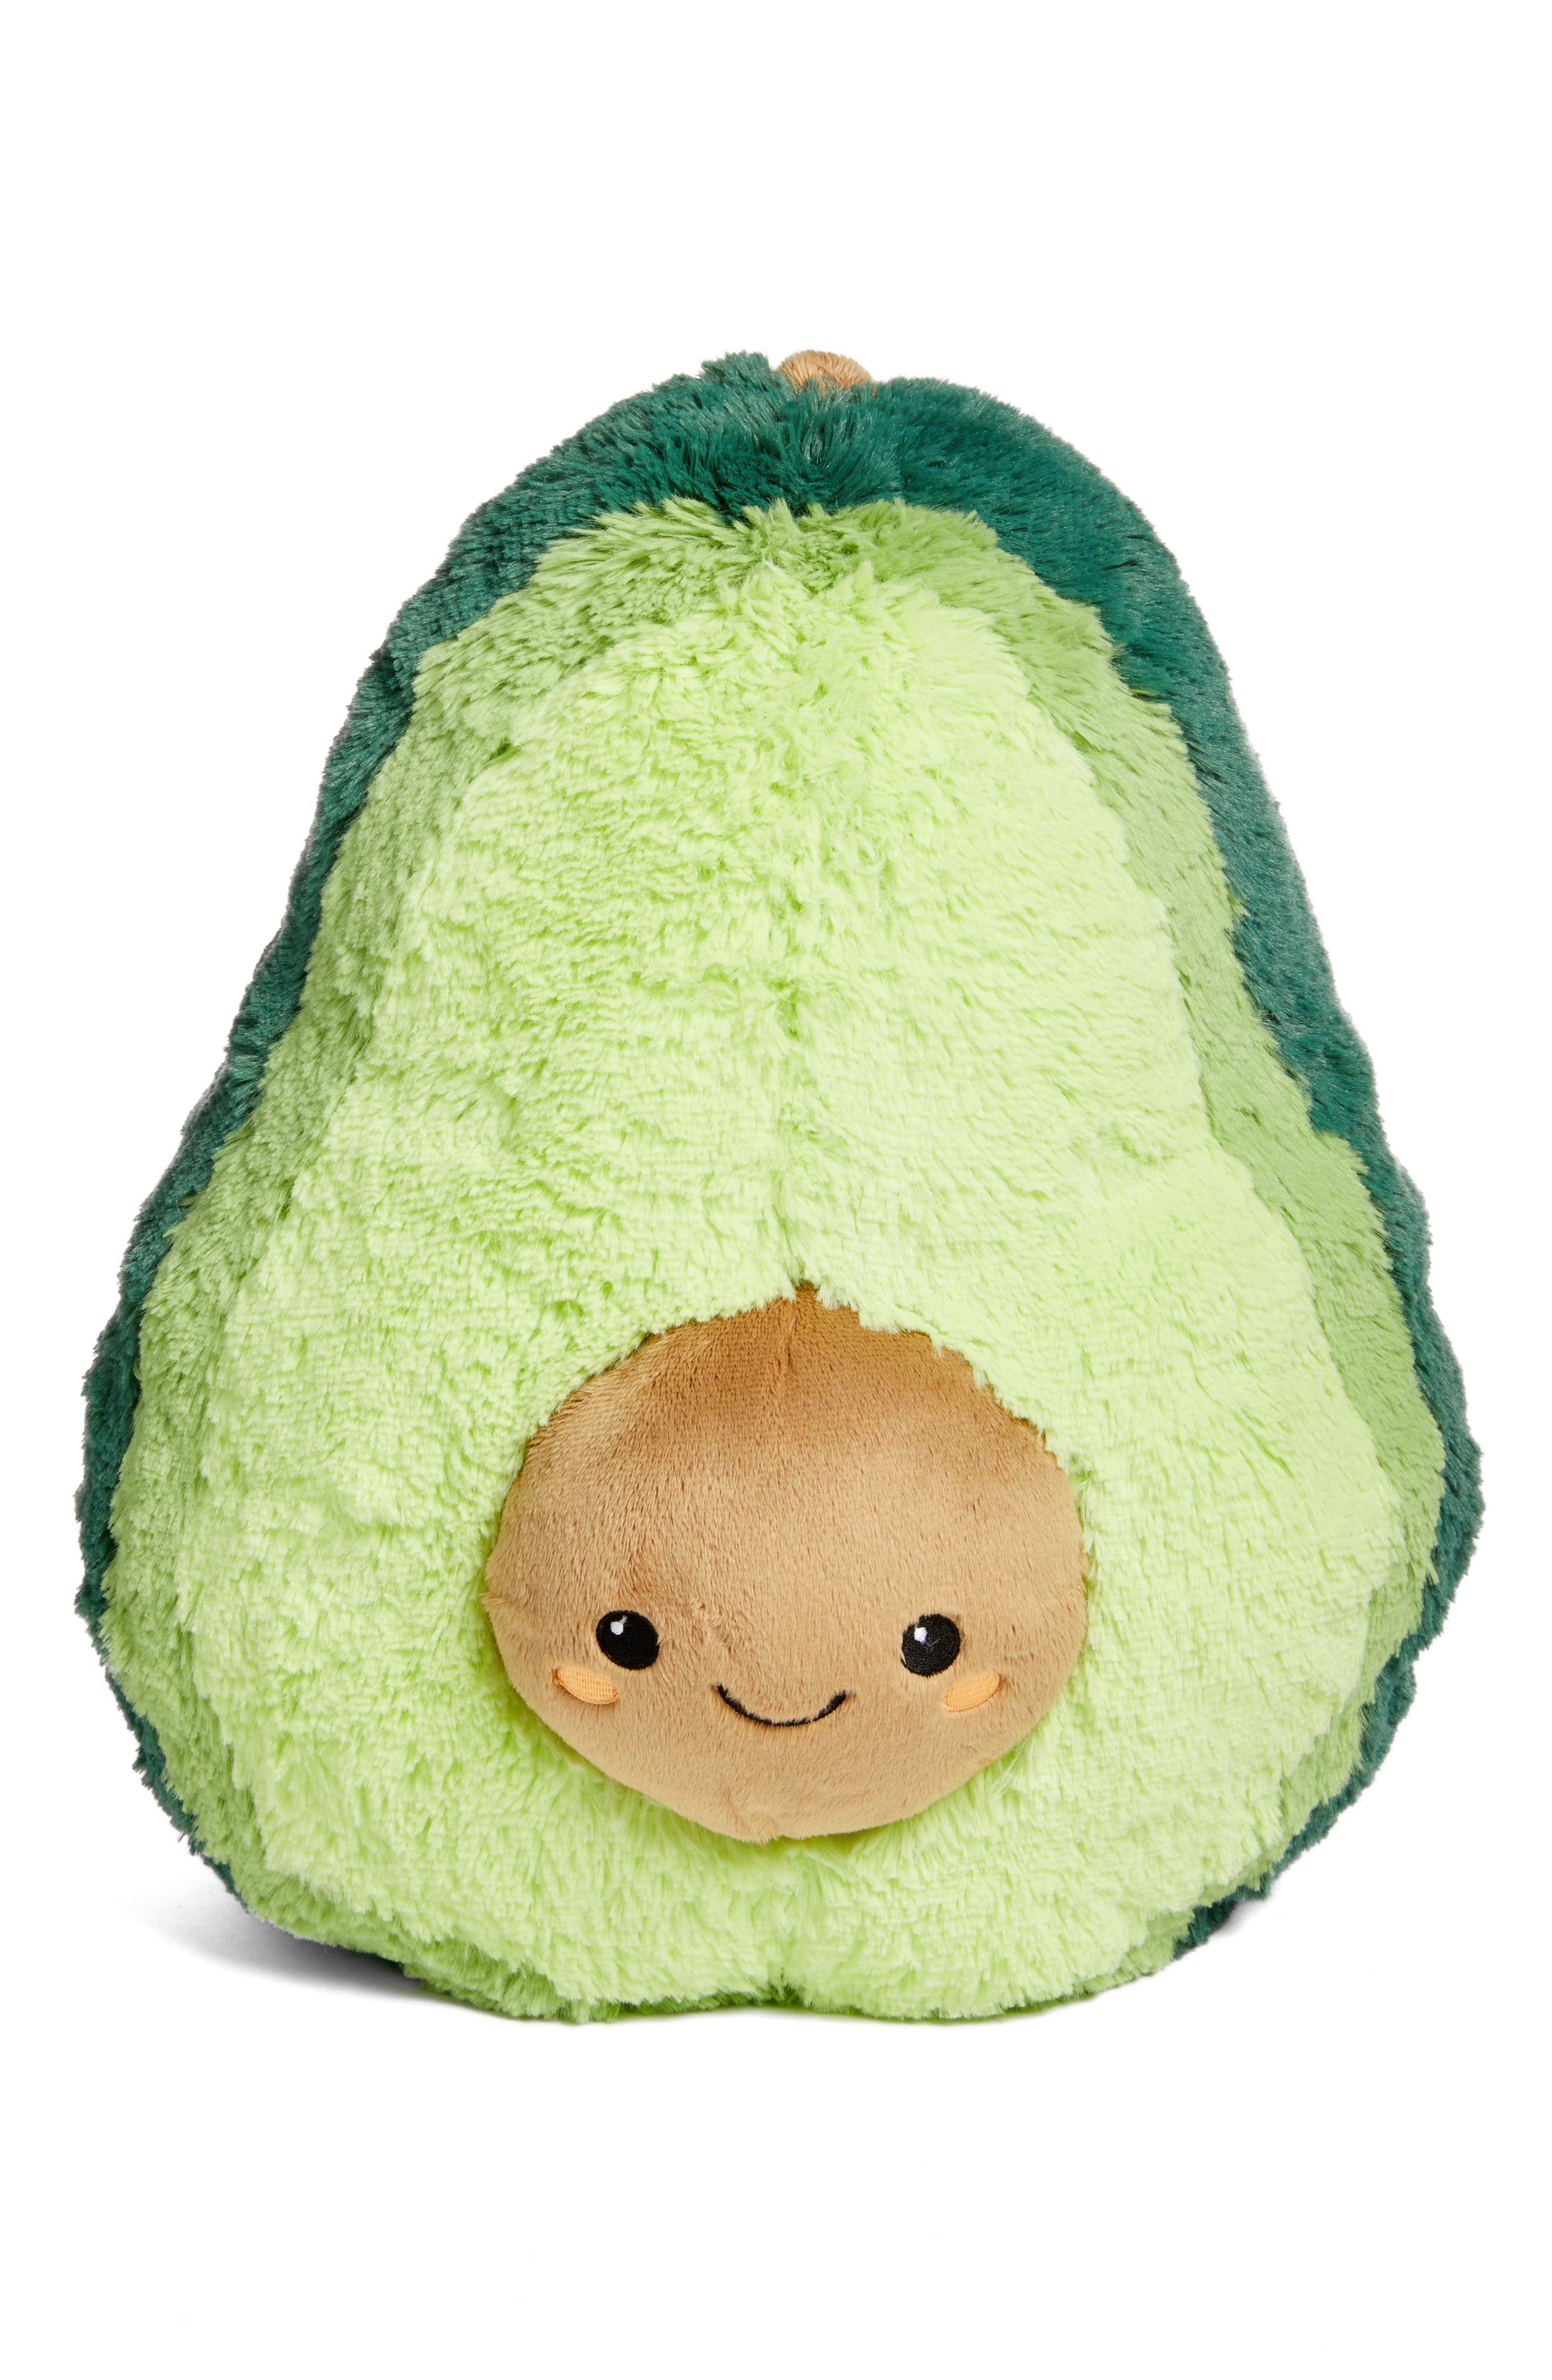 giant avocado stuffed animal